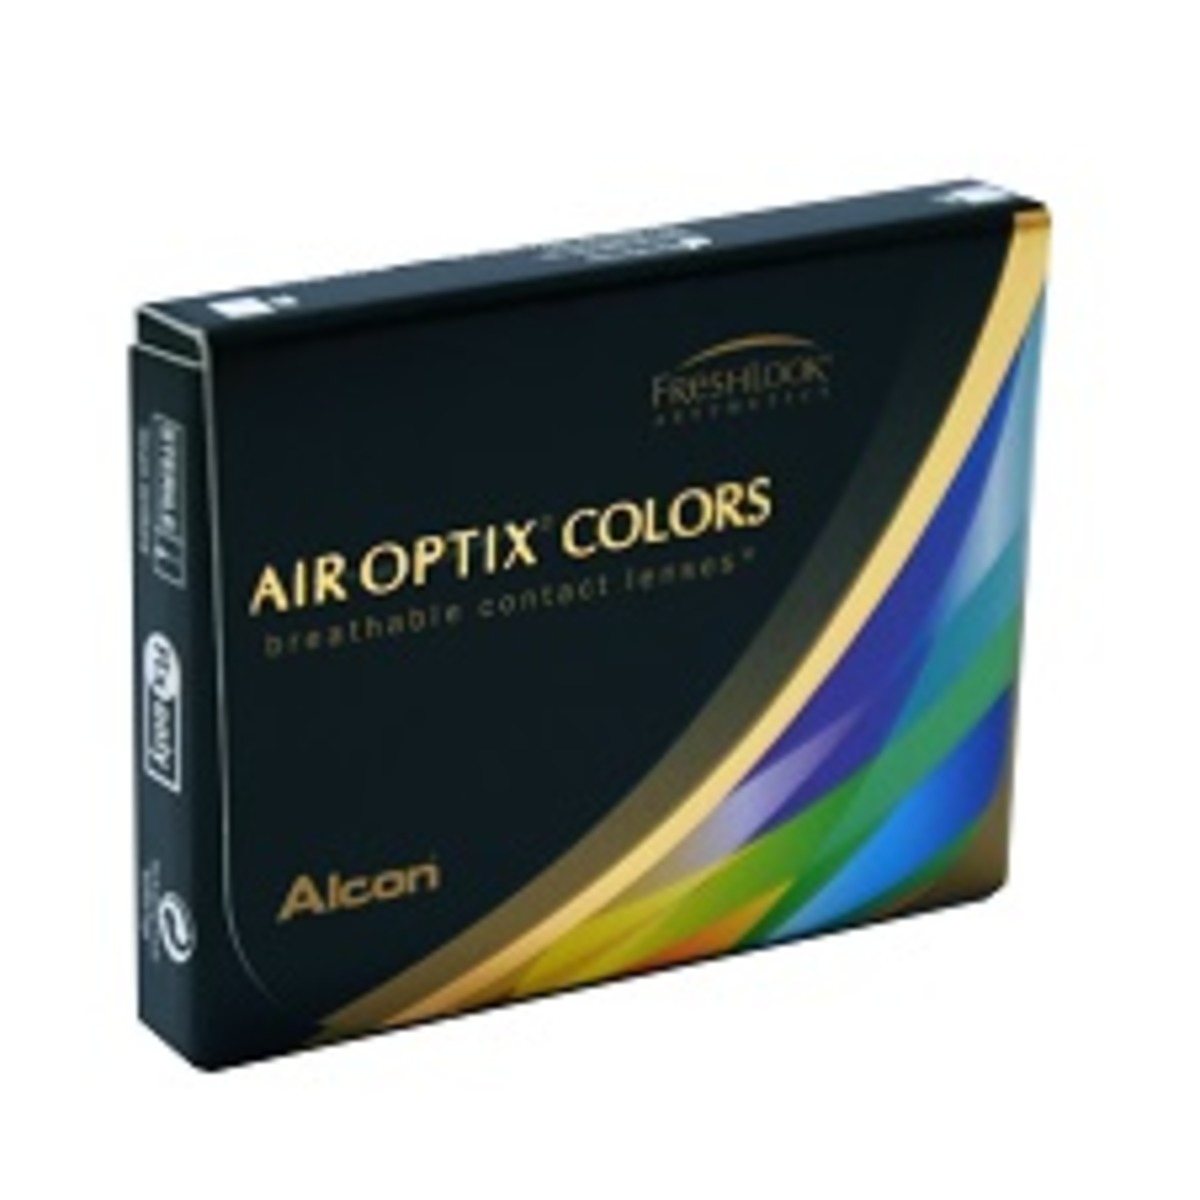 Air Optix Colors Bleu Brillant (Brillant Blue)